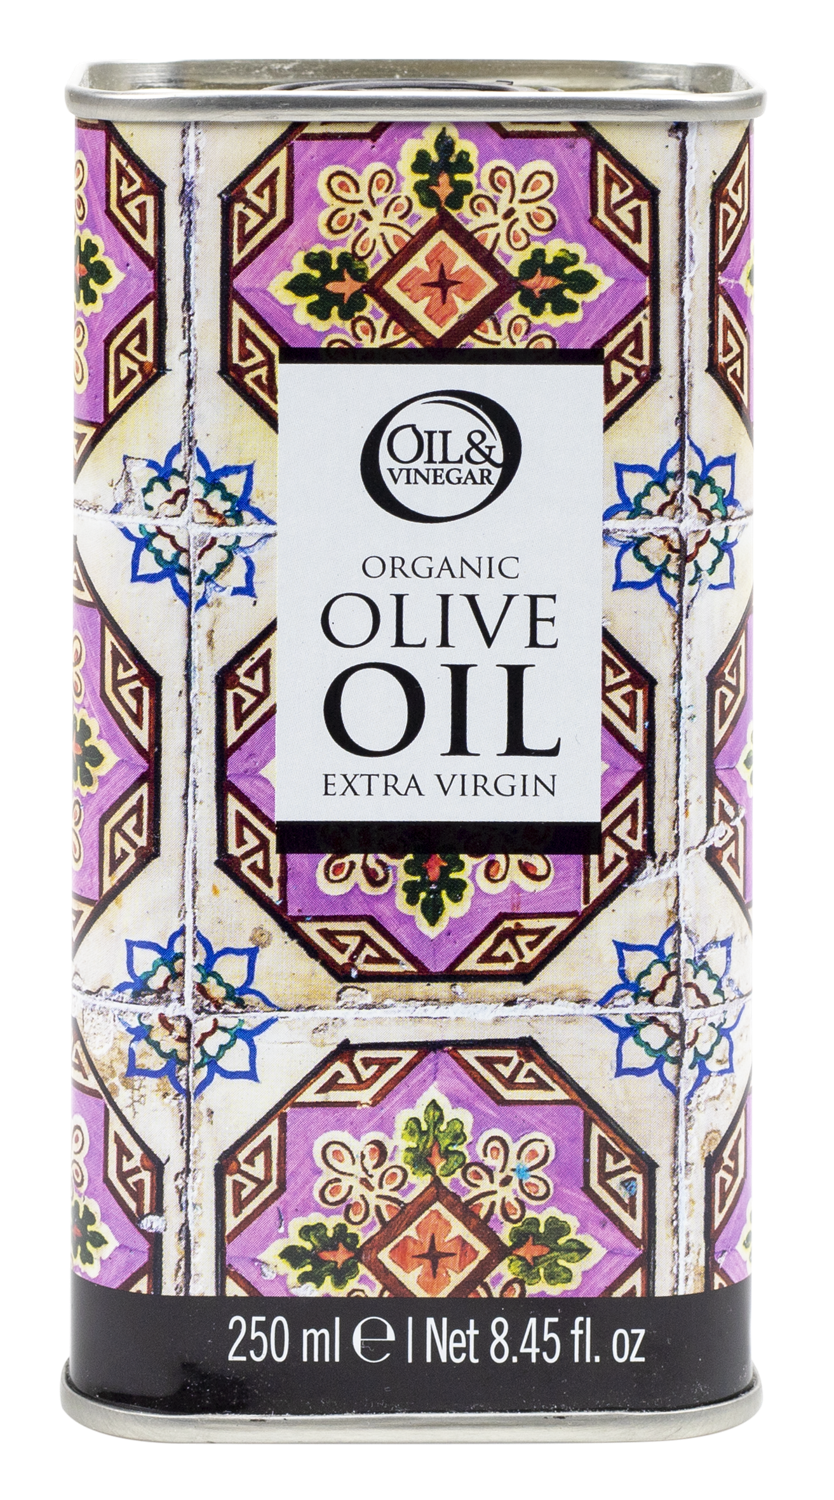 Biologische Spaanse extra vierge olijfolie in designblik (roze) - € 9,95